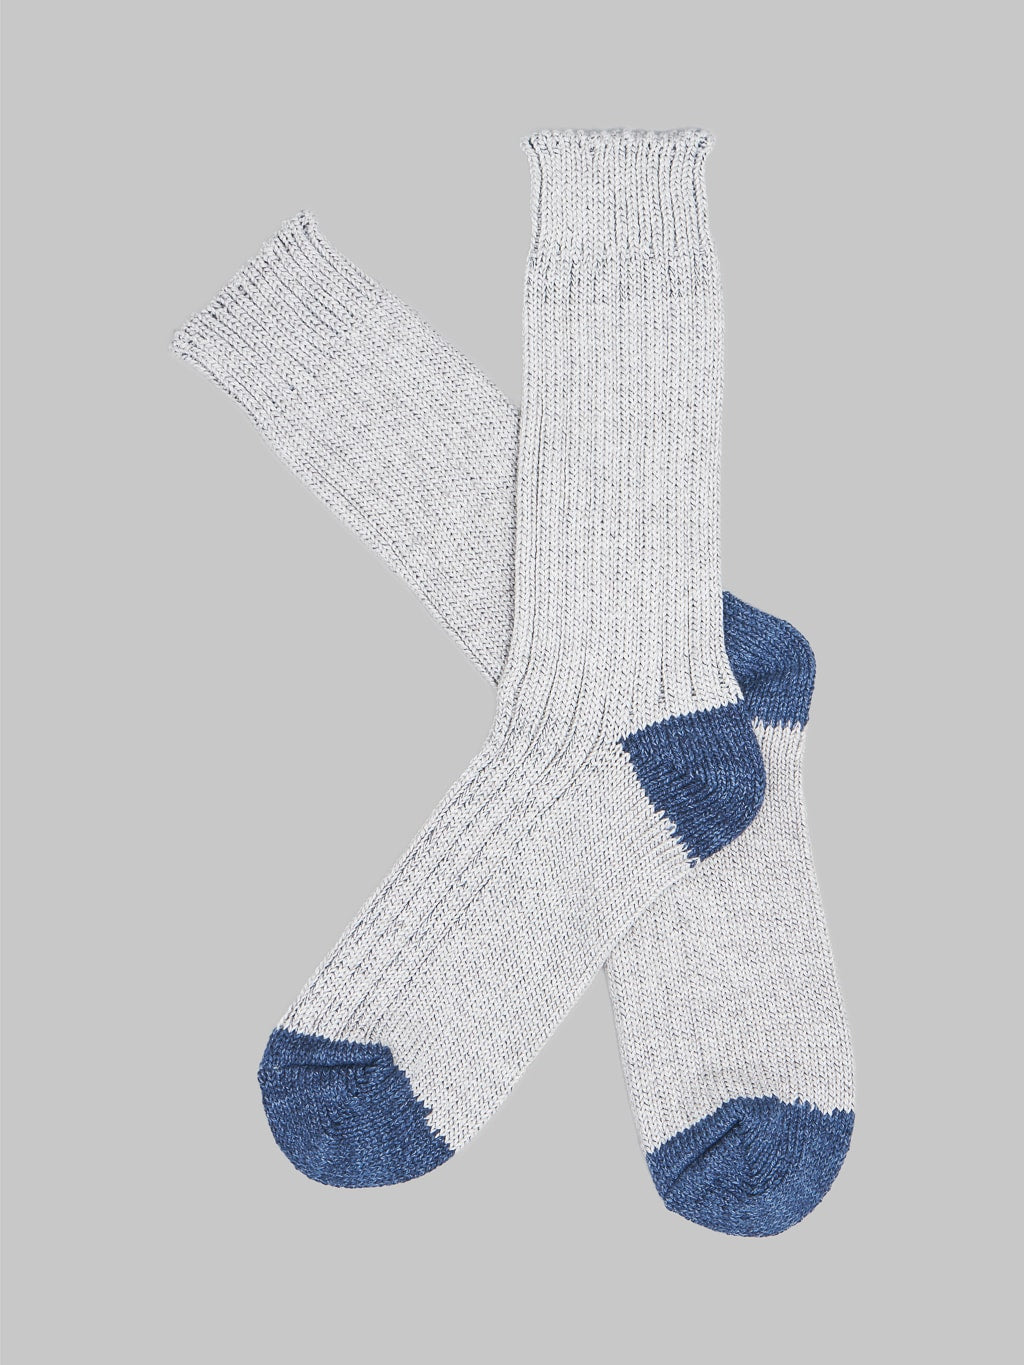 Nishiguchi Kutsushita Recycled Cotton Socks Light Grey Pair